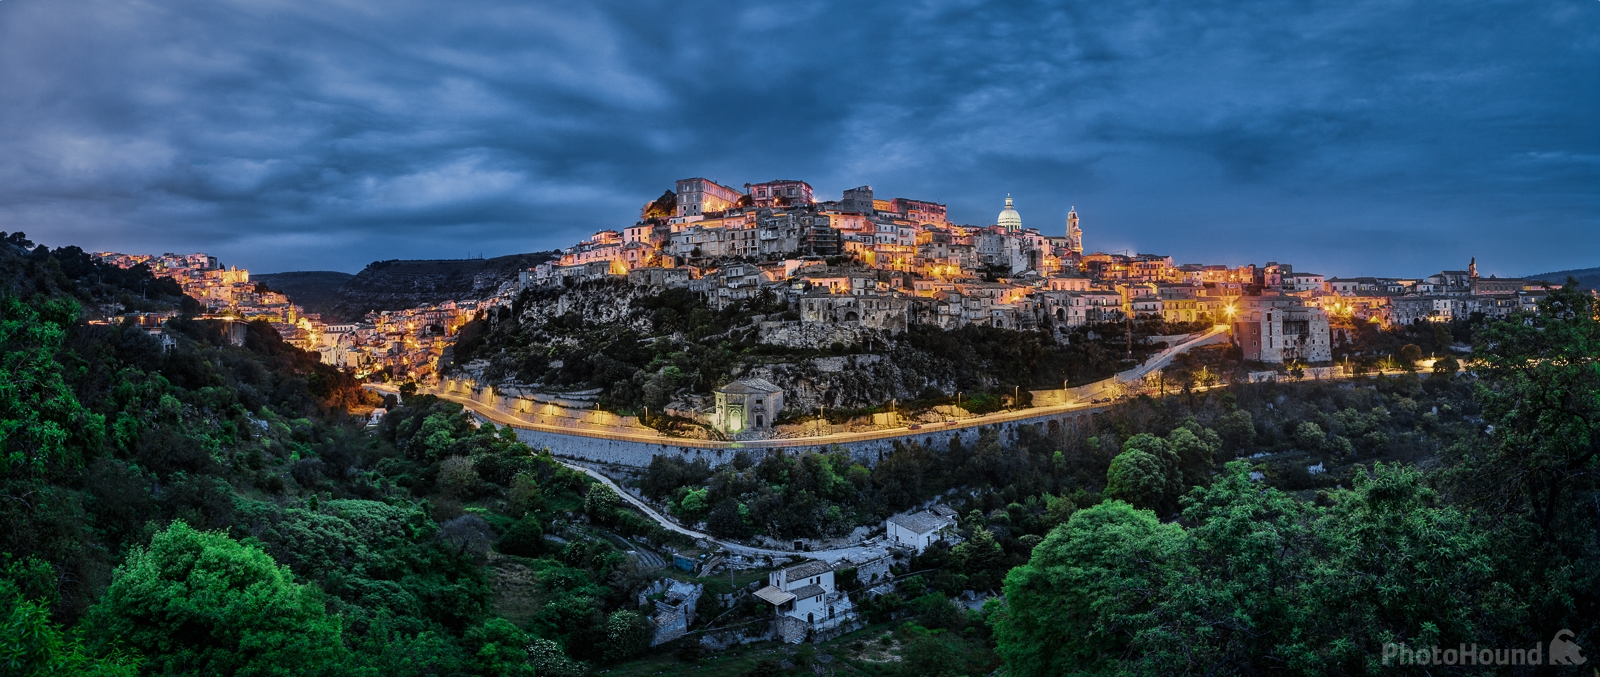 Image of Ragusa Ibla - Panoramic View by Raimondo Giamberduca